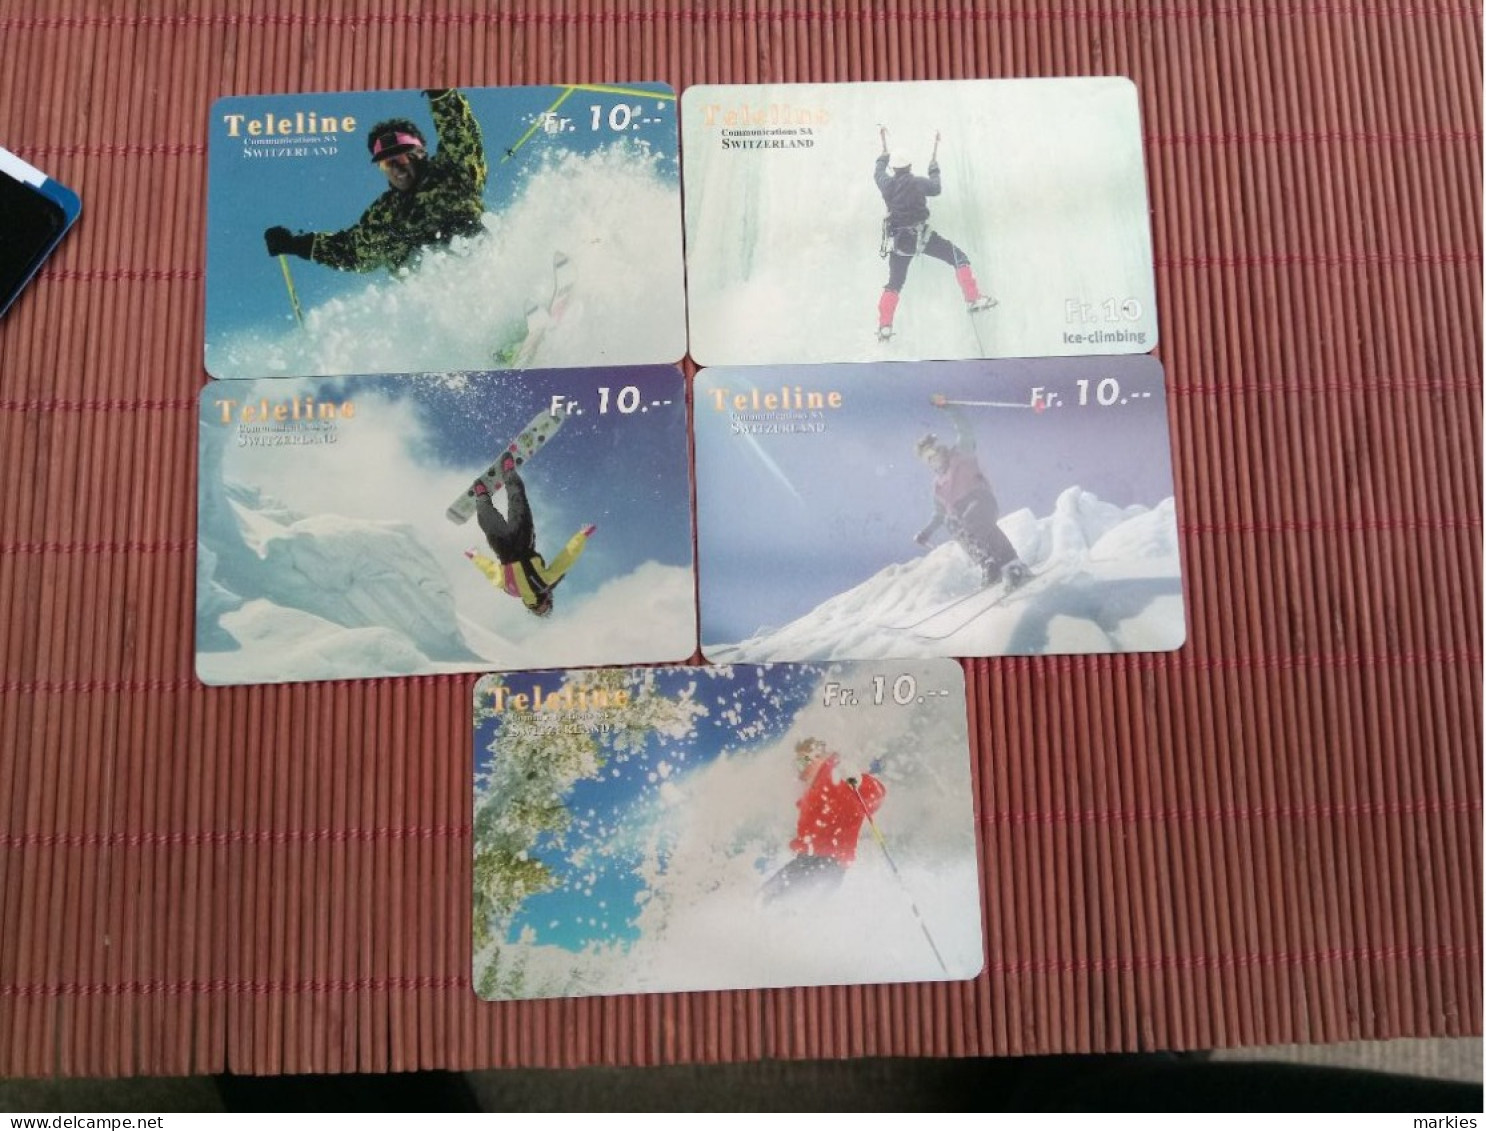 Teleline Ski Prepaidcards Used - Switzerland